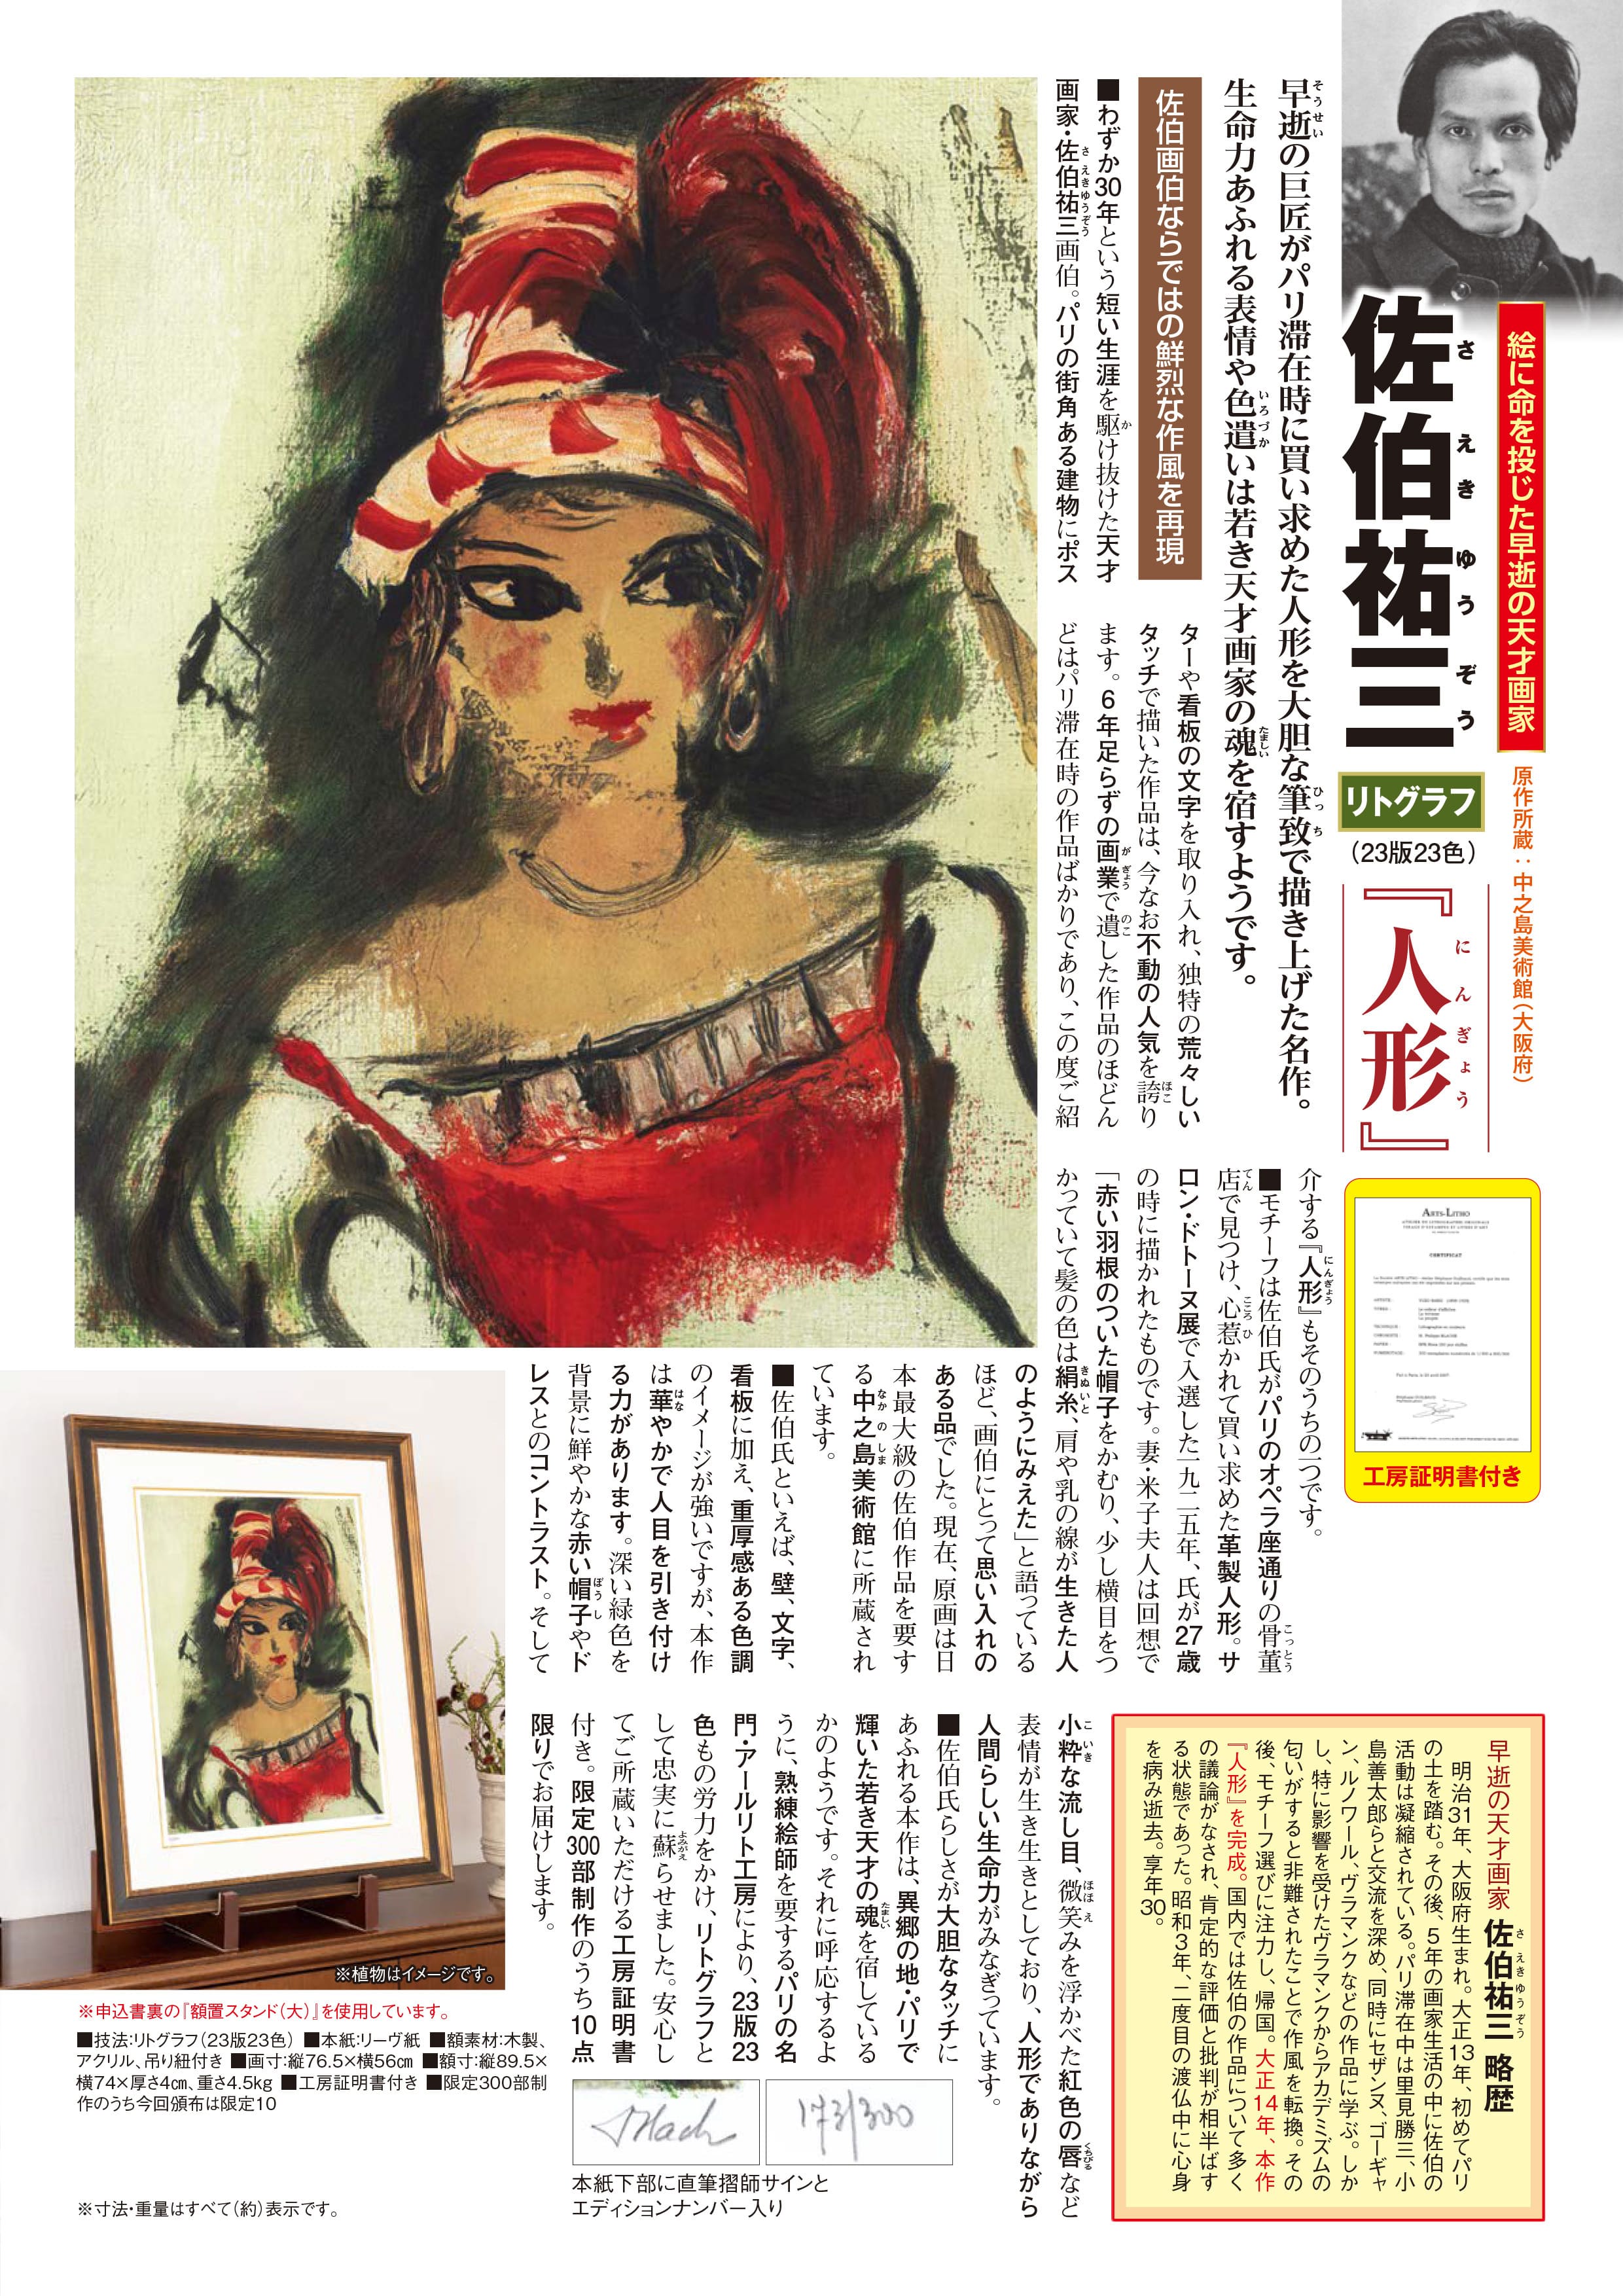 佐伯祐三 リトグラフ『人形』 | 東京書芸館公式通販ウェブサイト 